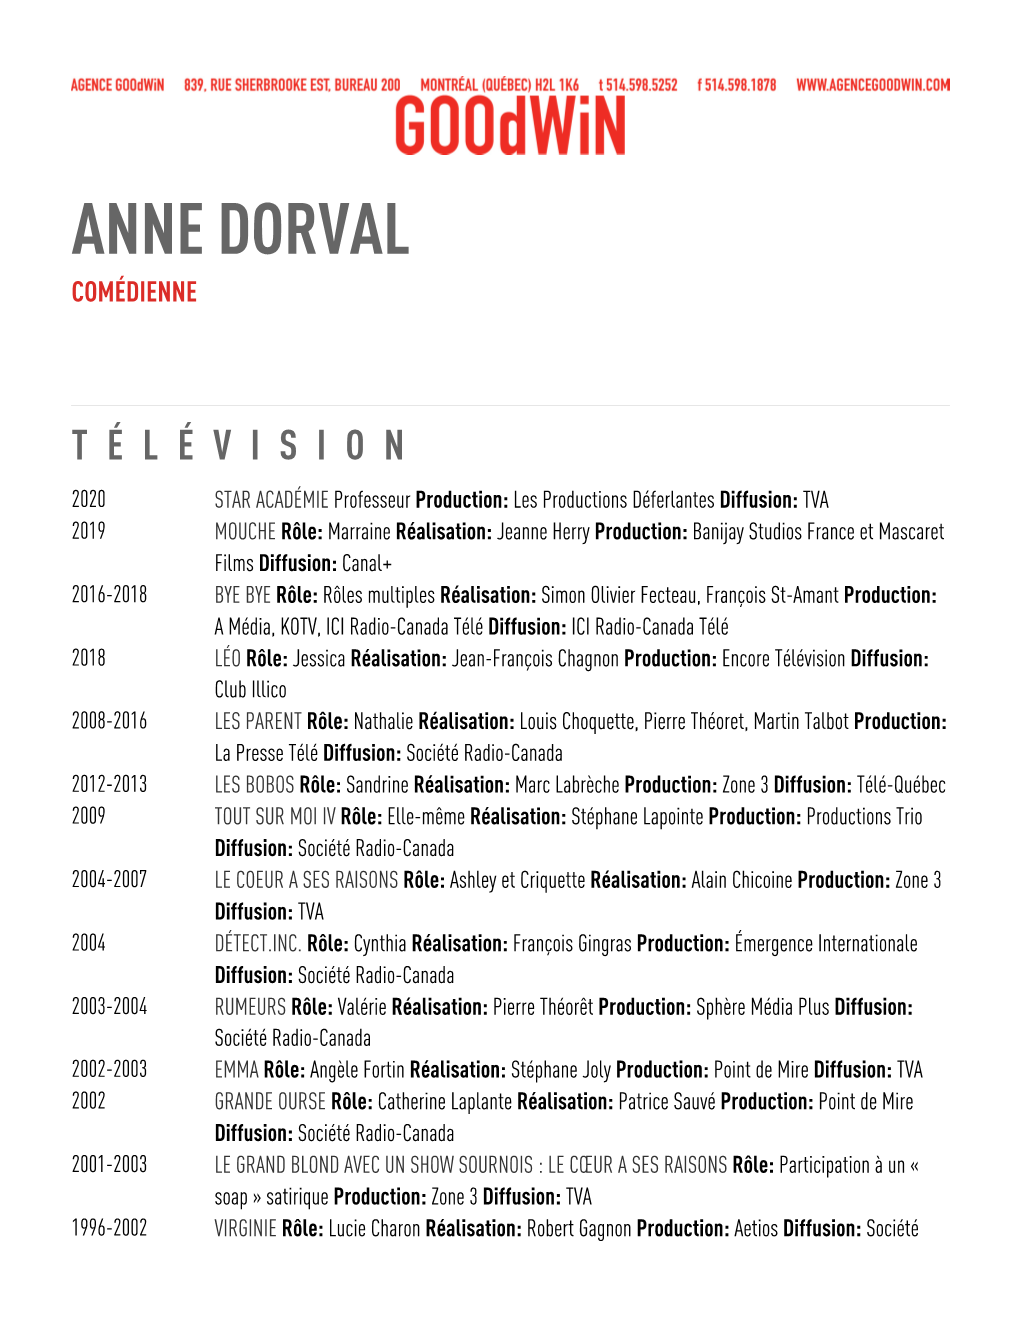 Anne Dorval Comédienne